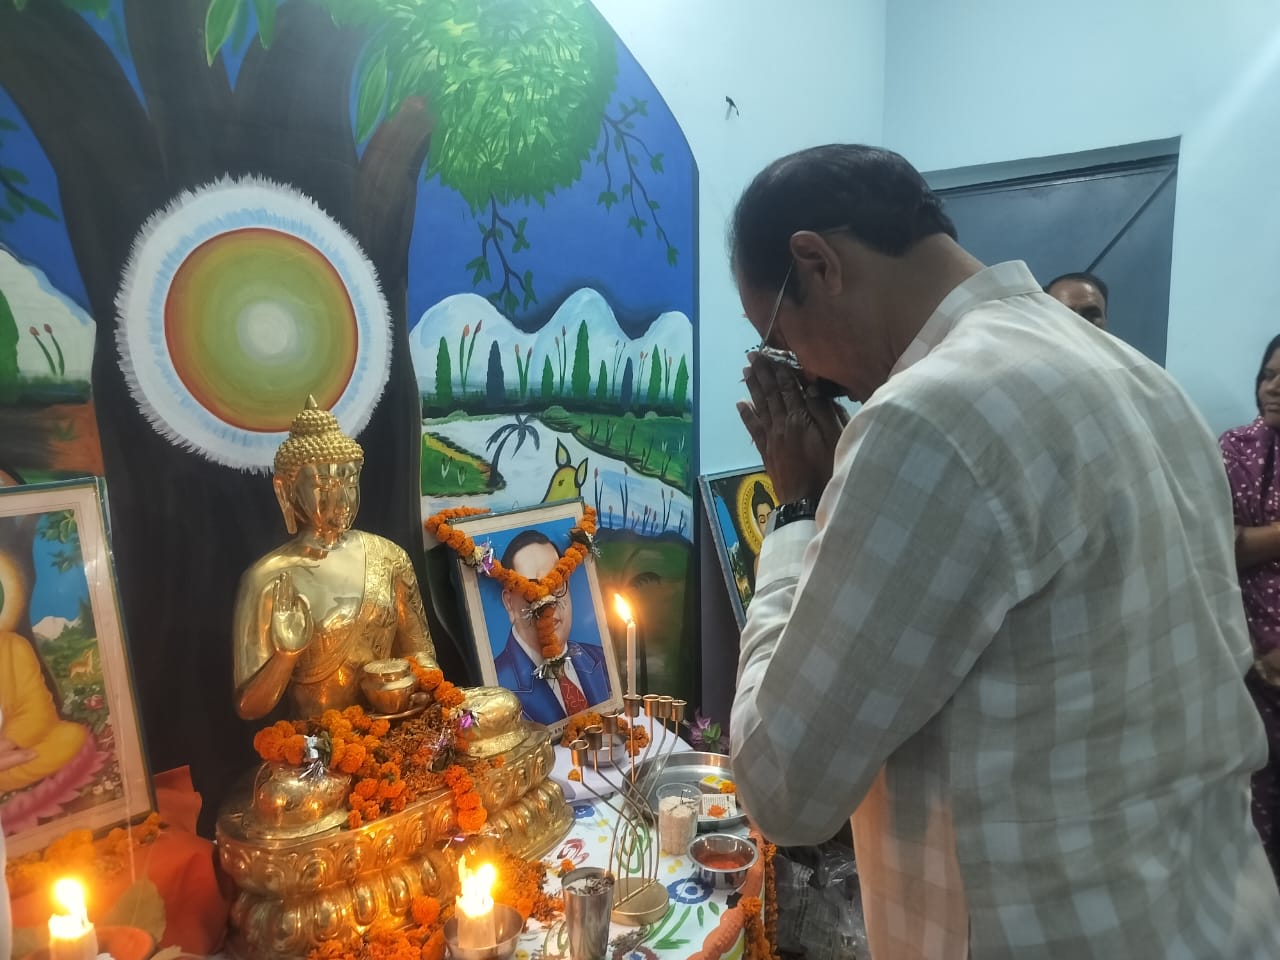 भगवान गौतम बुद्ध मूर्ति का हुआ अनावरण, शामिल हुए विधायक कुंवर निषाद